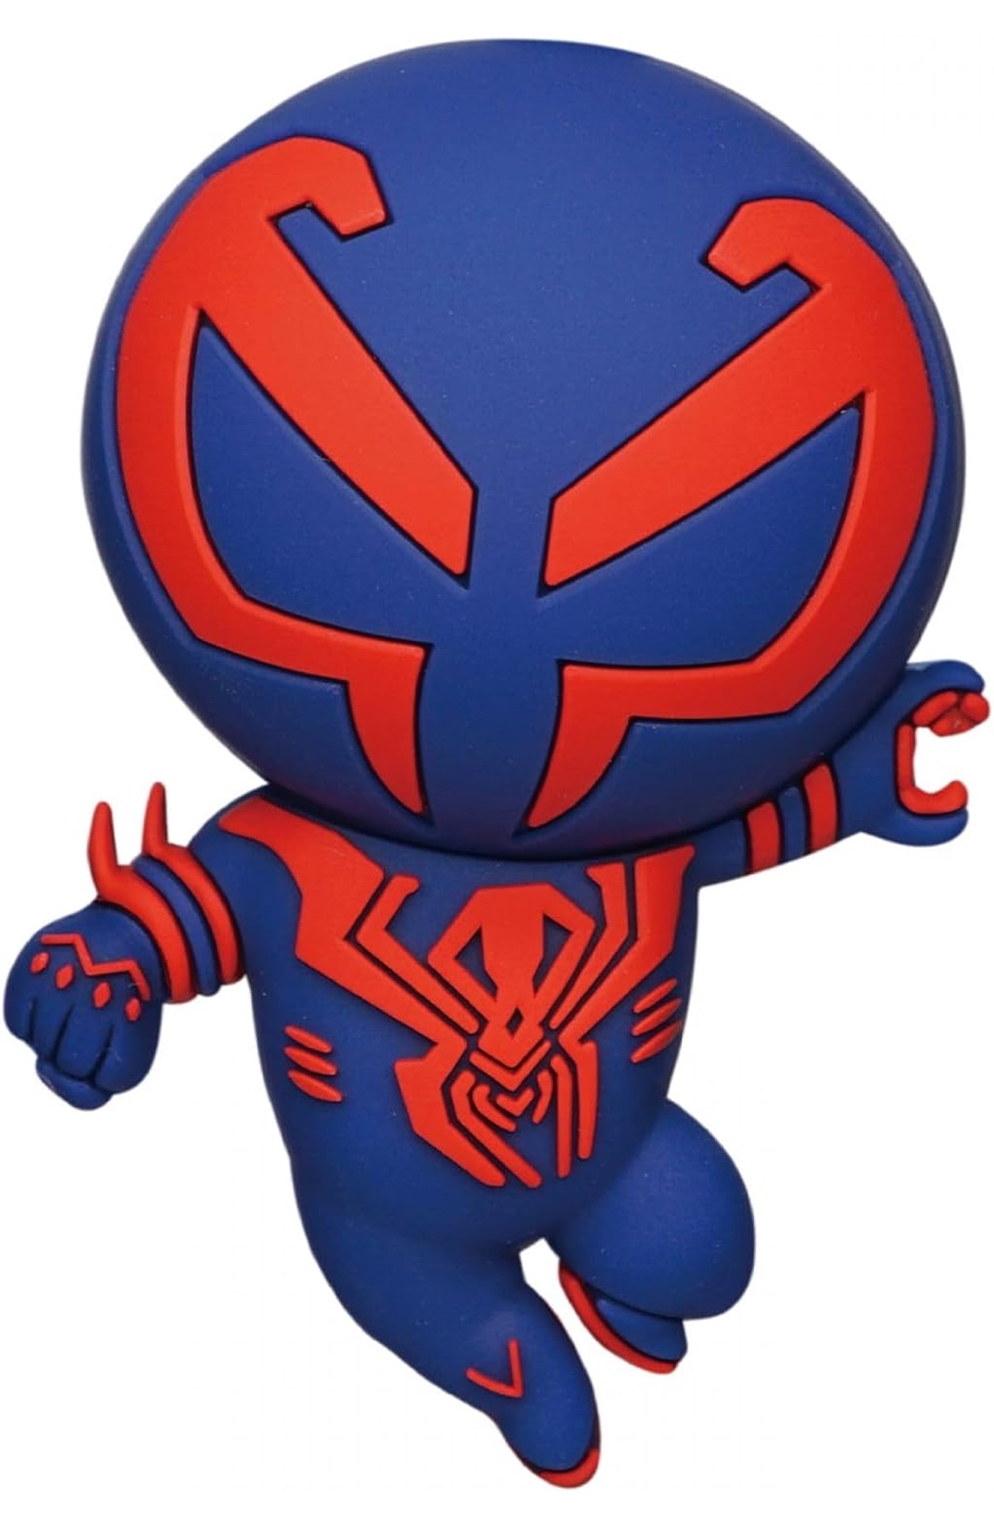 Spider-Verse - Spider-Man 2099 3D Foam Magnet